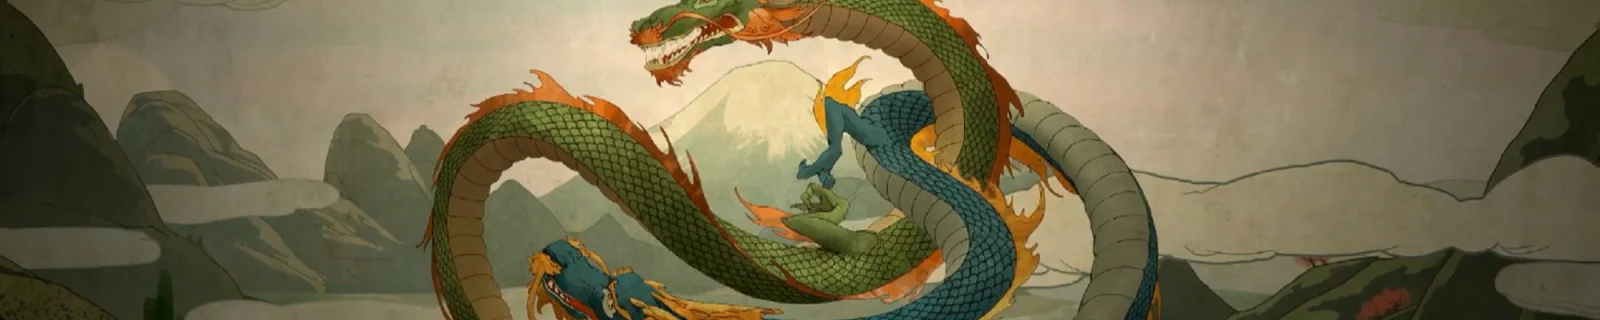 《守望先锋》第三部动画短片——《双龙》